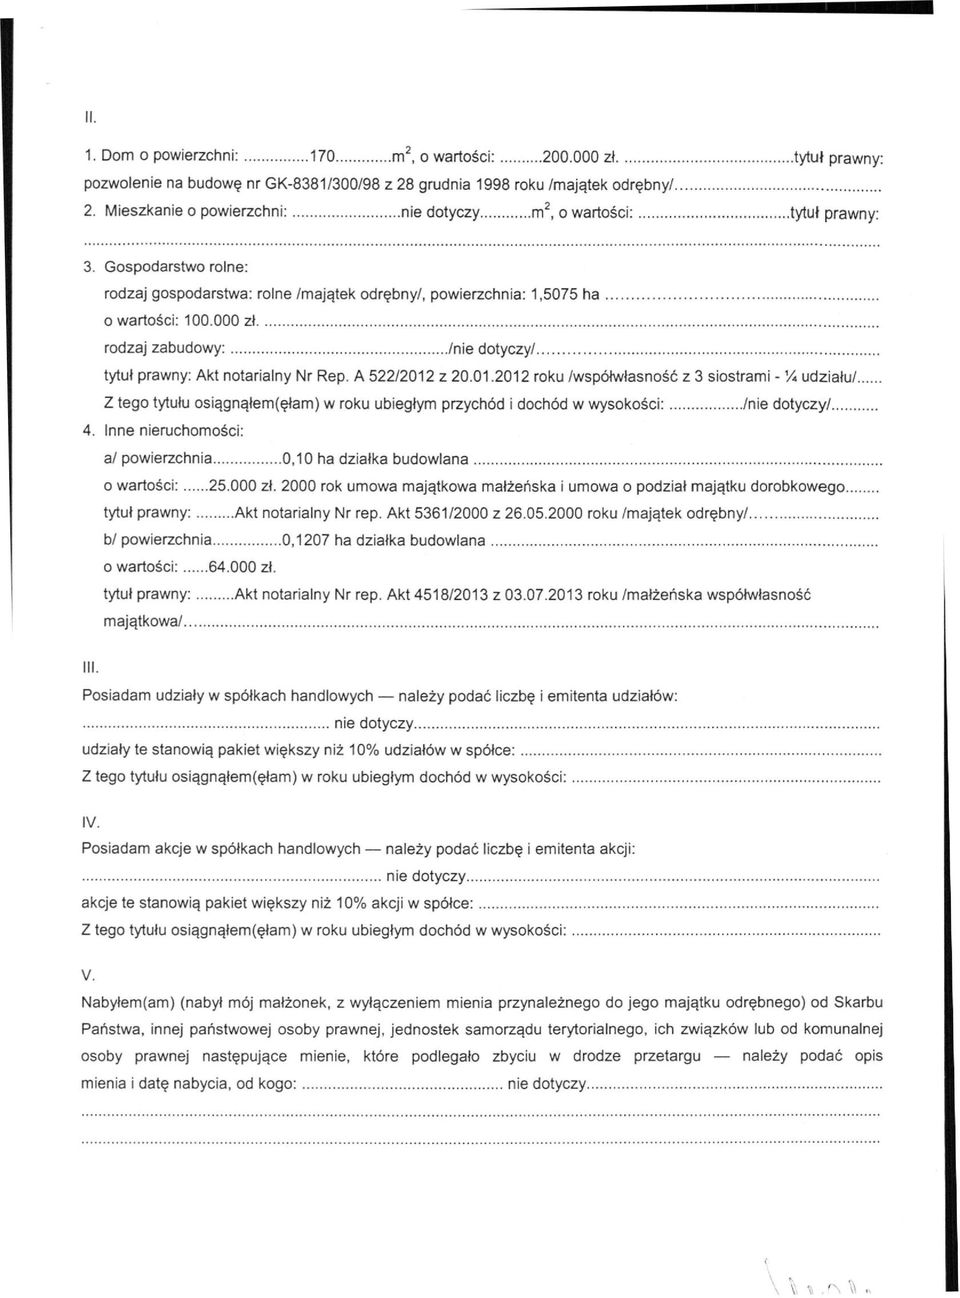 000 zł rodzaj zabudowy: // tytuł prawny: Akt notarialny Nr Rep. A 522/2012